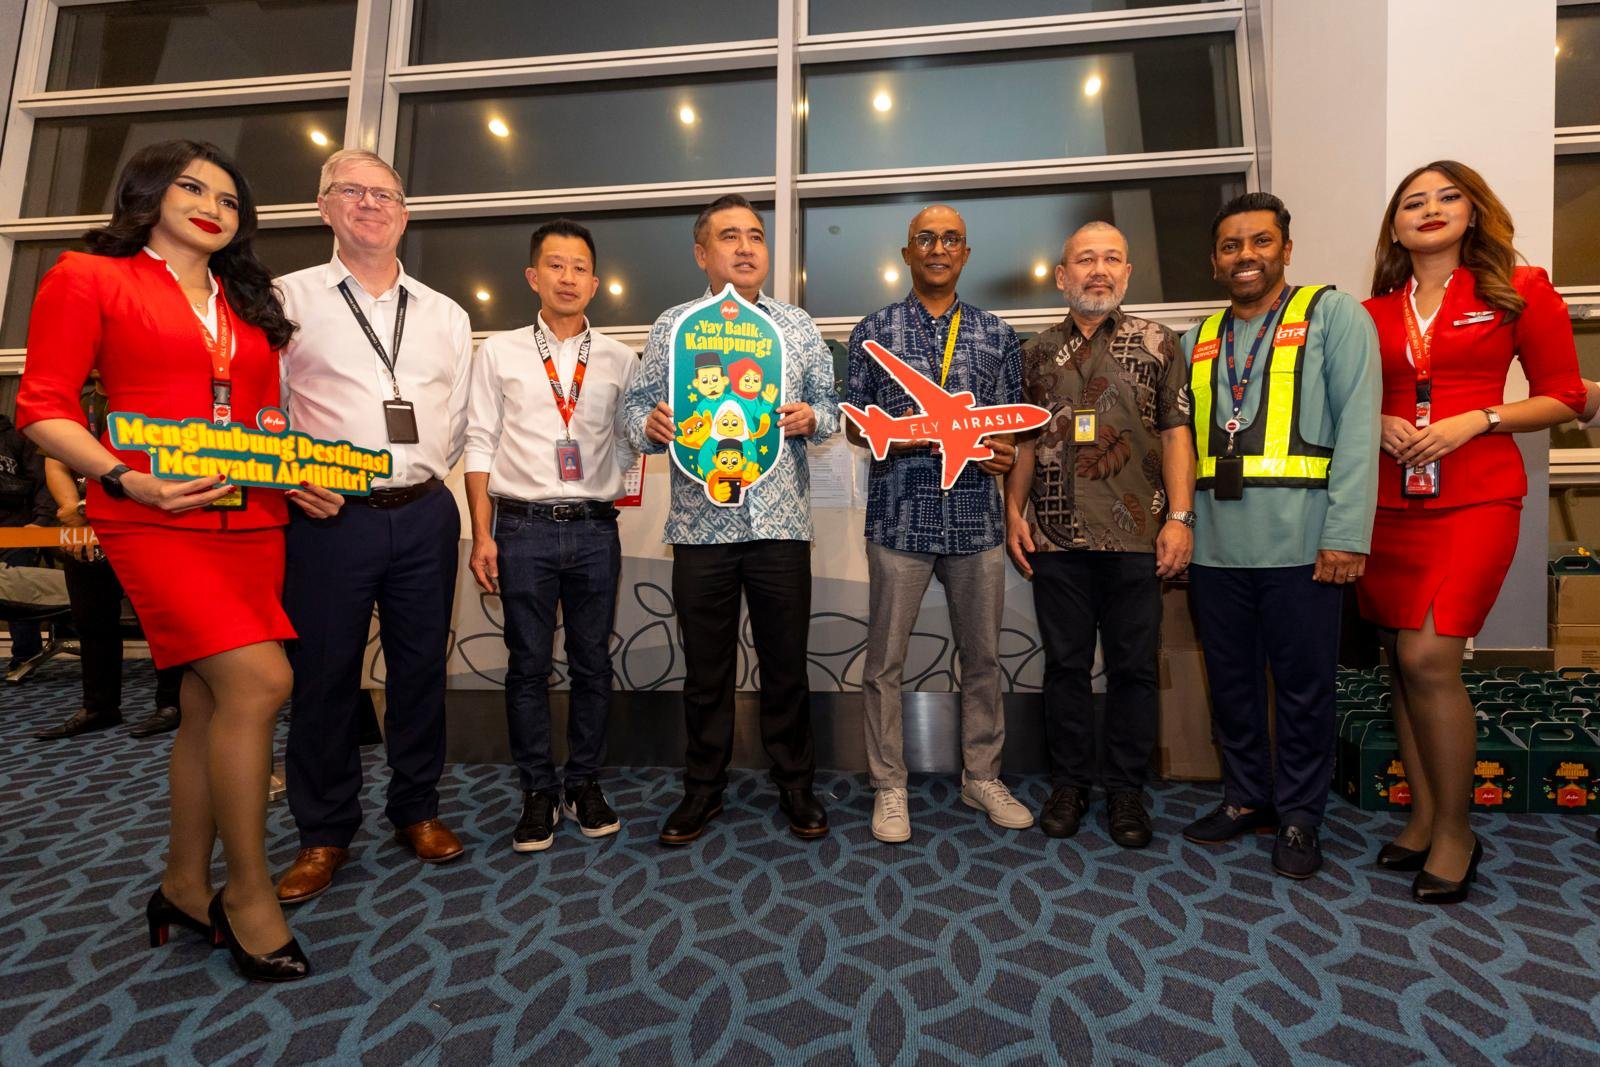  （左二起）Gordon Steward，马来西亚机场控股公司首席运营官；拿督邬志顺机长，亚航航空集团副首席执行官（航空运营）；拿督 YB 陆兆福，马来西亚交通部部长；Bo Lingam，亚航航空集团首席执行官；Datuk Captain Fareh Ishraf，亚航高级管理层官员；Musdalifa Abdullah，亚航Ground Team Red （GTR）首席执行官一同于亚航开斋节固定票价航班送行仪式。 